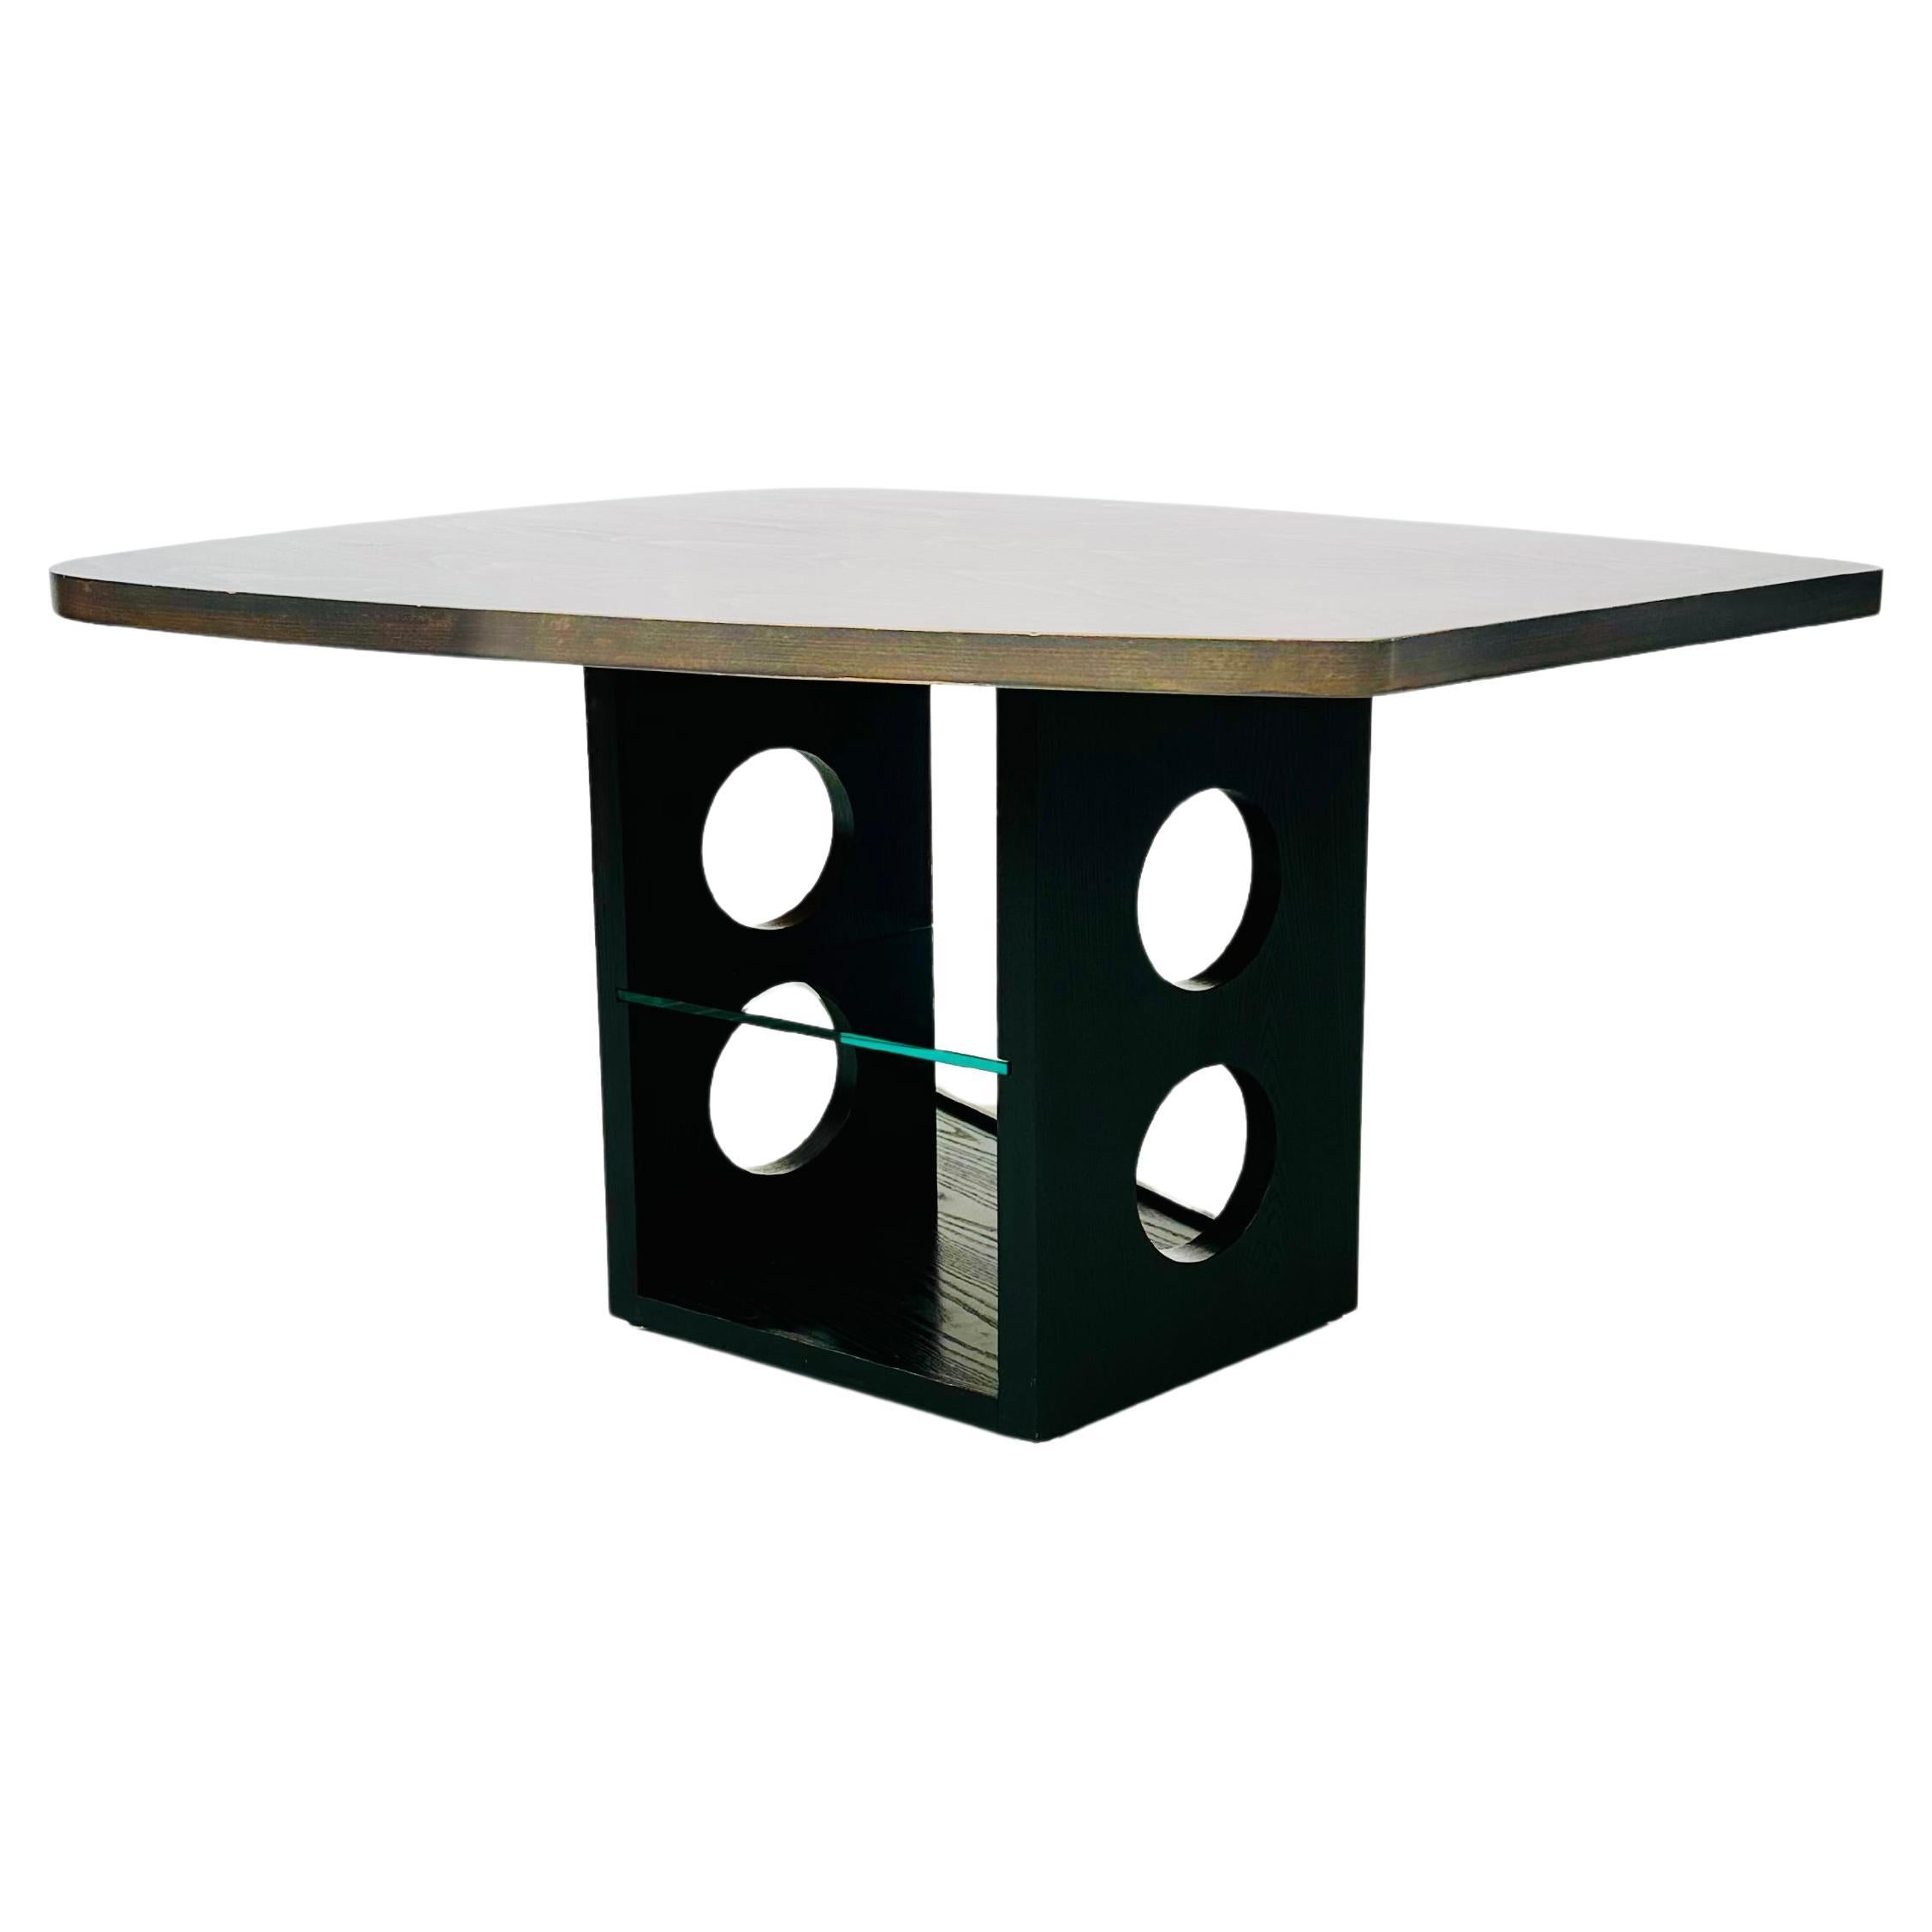 Table spéciale grâce à son design sophistiqué. Le plateau de la table, en forme de palette, a été inventé par Jean Prouve vers 1940. Quarante ans plus tard, dans les années 1980, l'équipe de Tecta a mis au point la base sculpturale. Cela s'est fait